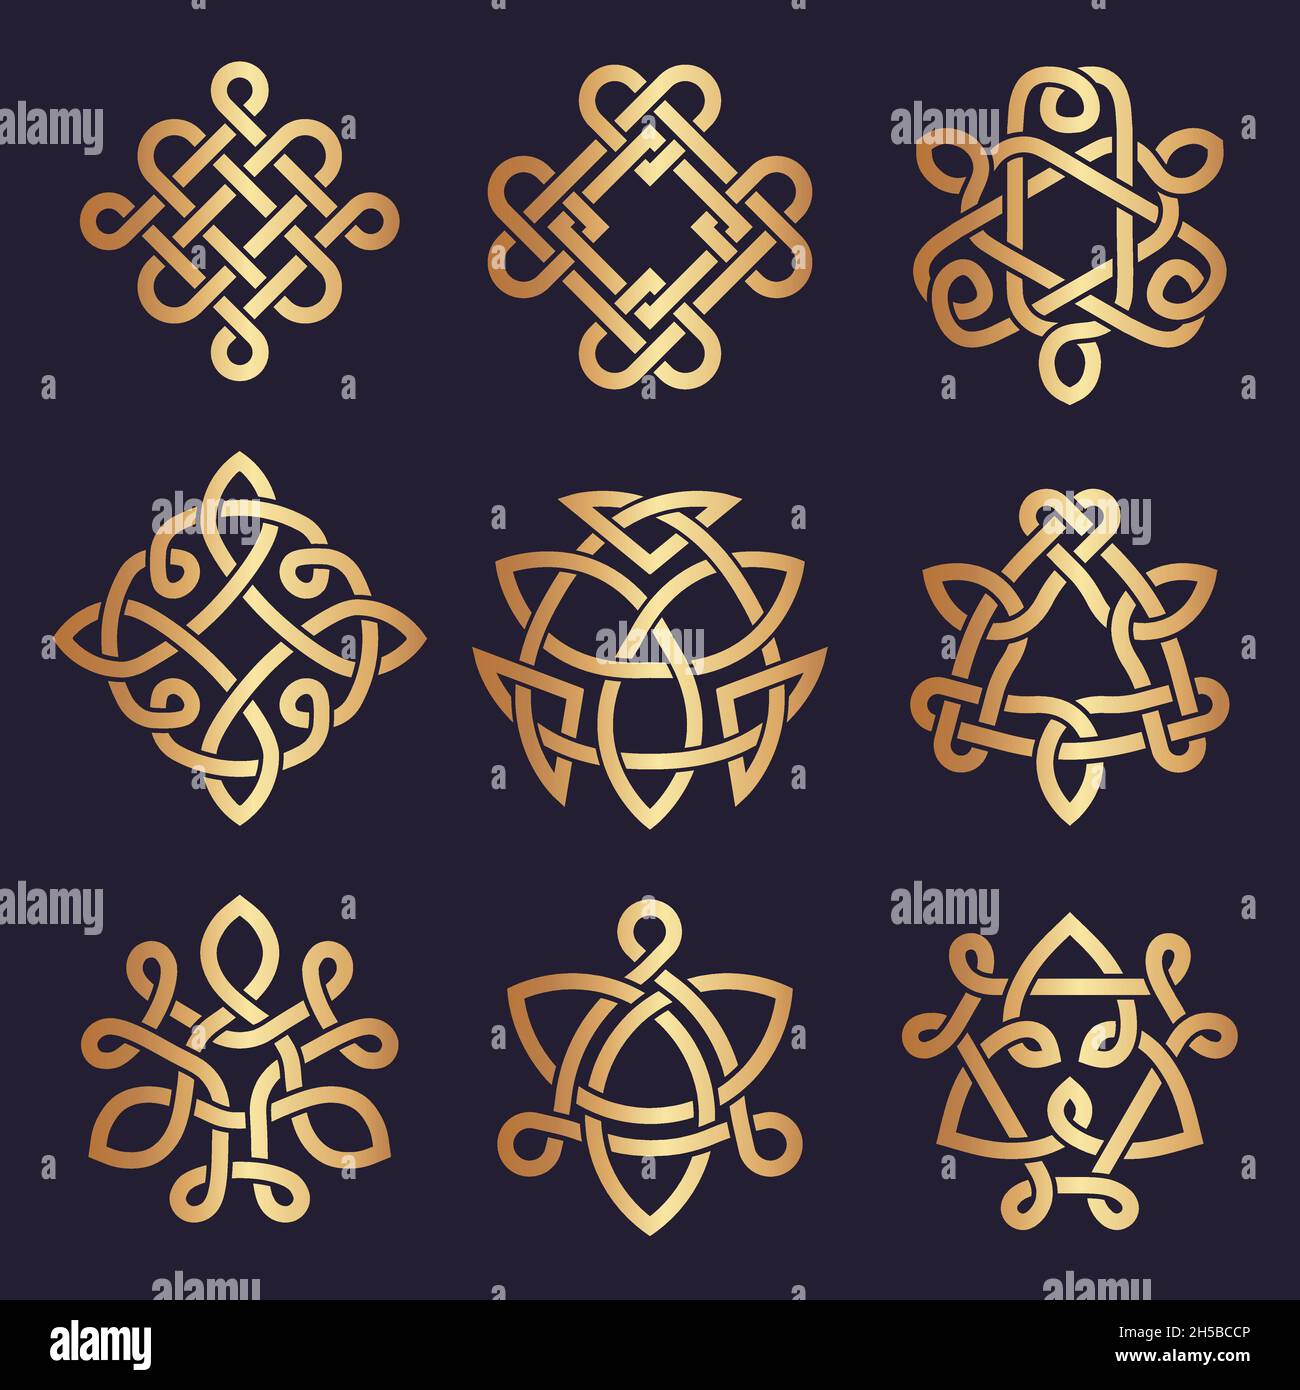 Nœuds celtiques.Symboles triangulaires stylisés motifs géométriques du tatouage irlandais ancien vecteur récent illustrations celtiques Illustration de Vecteur